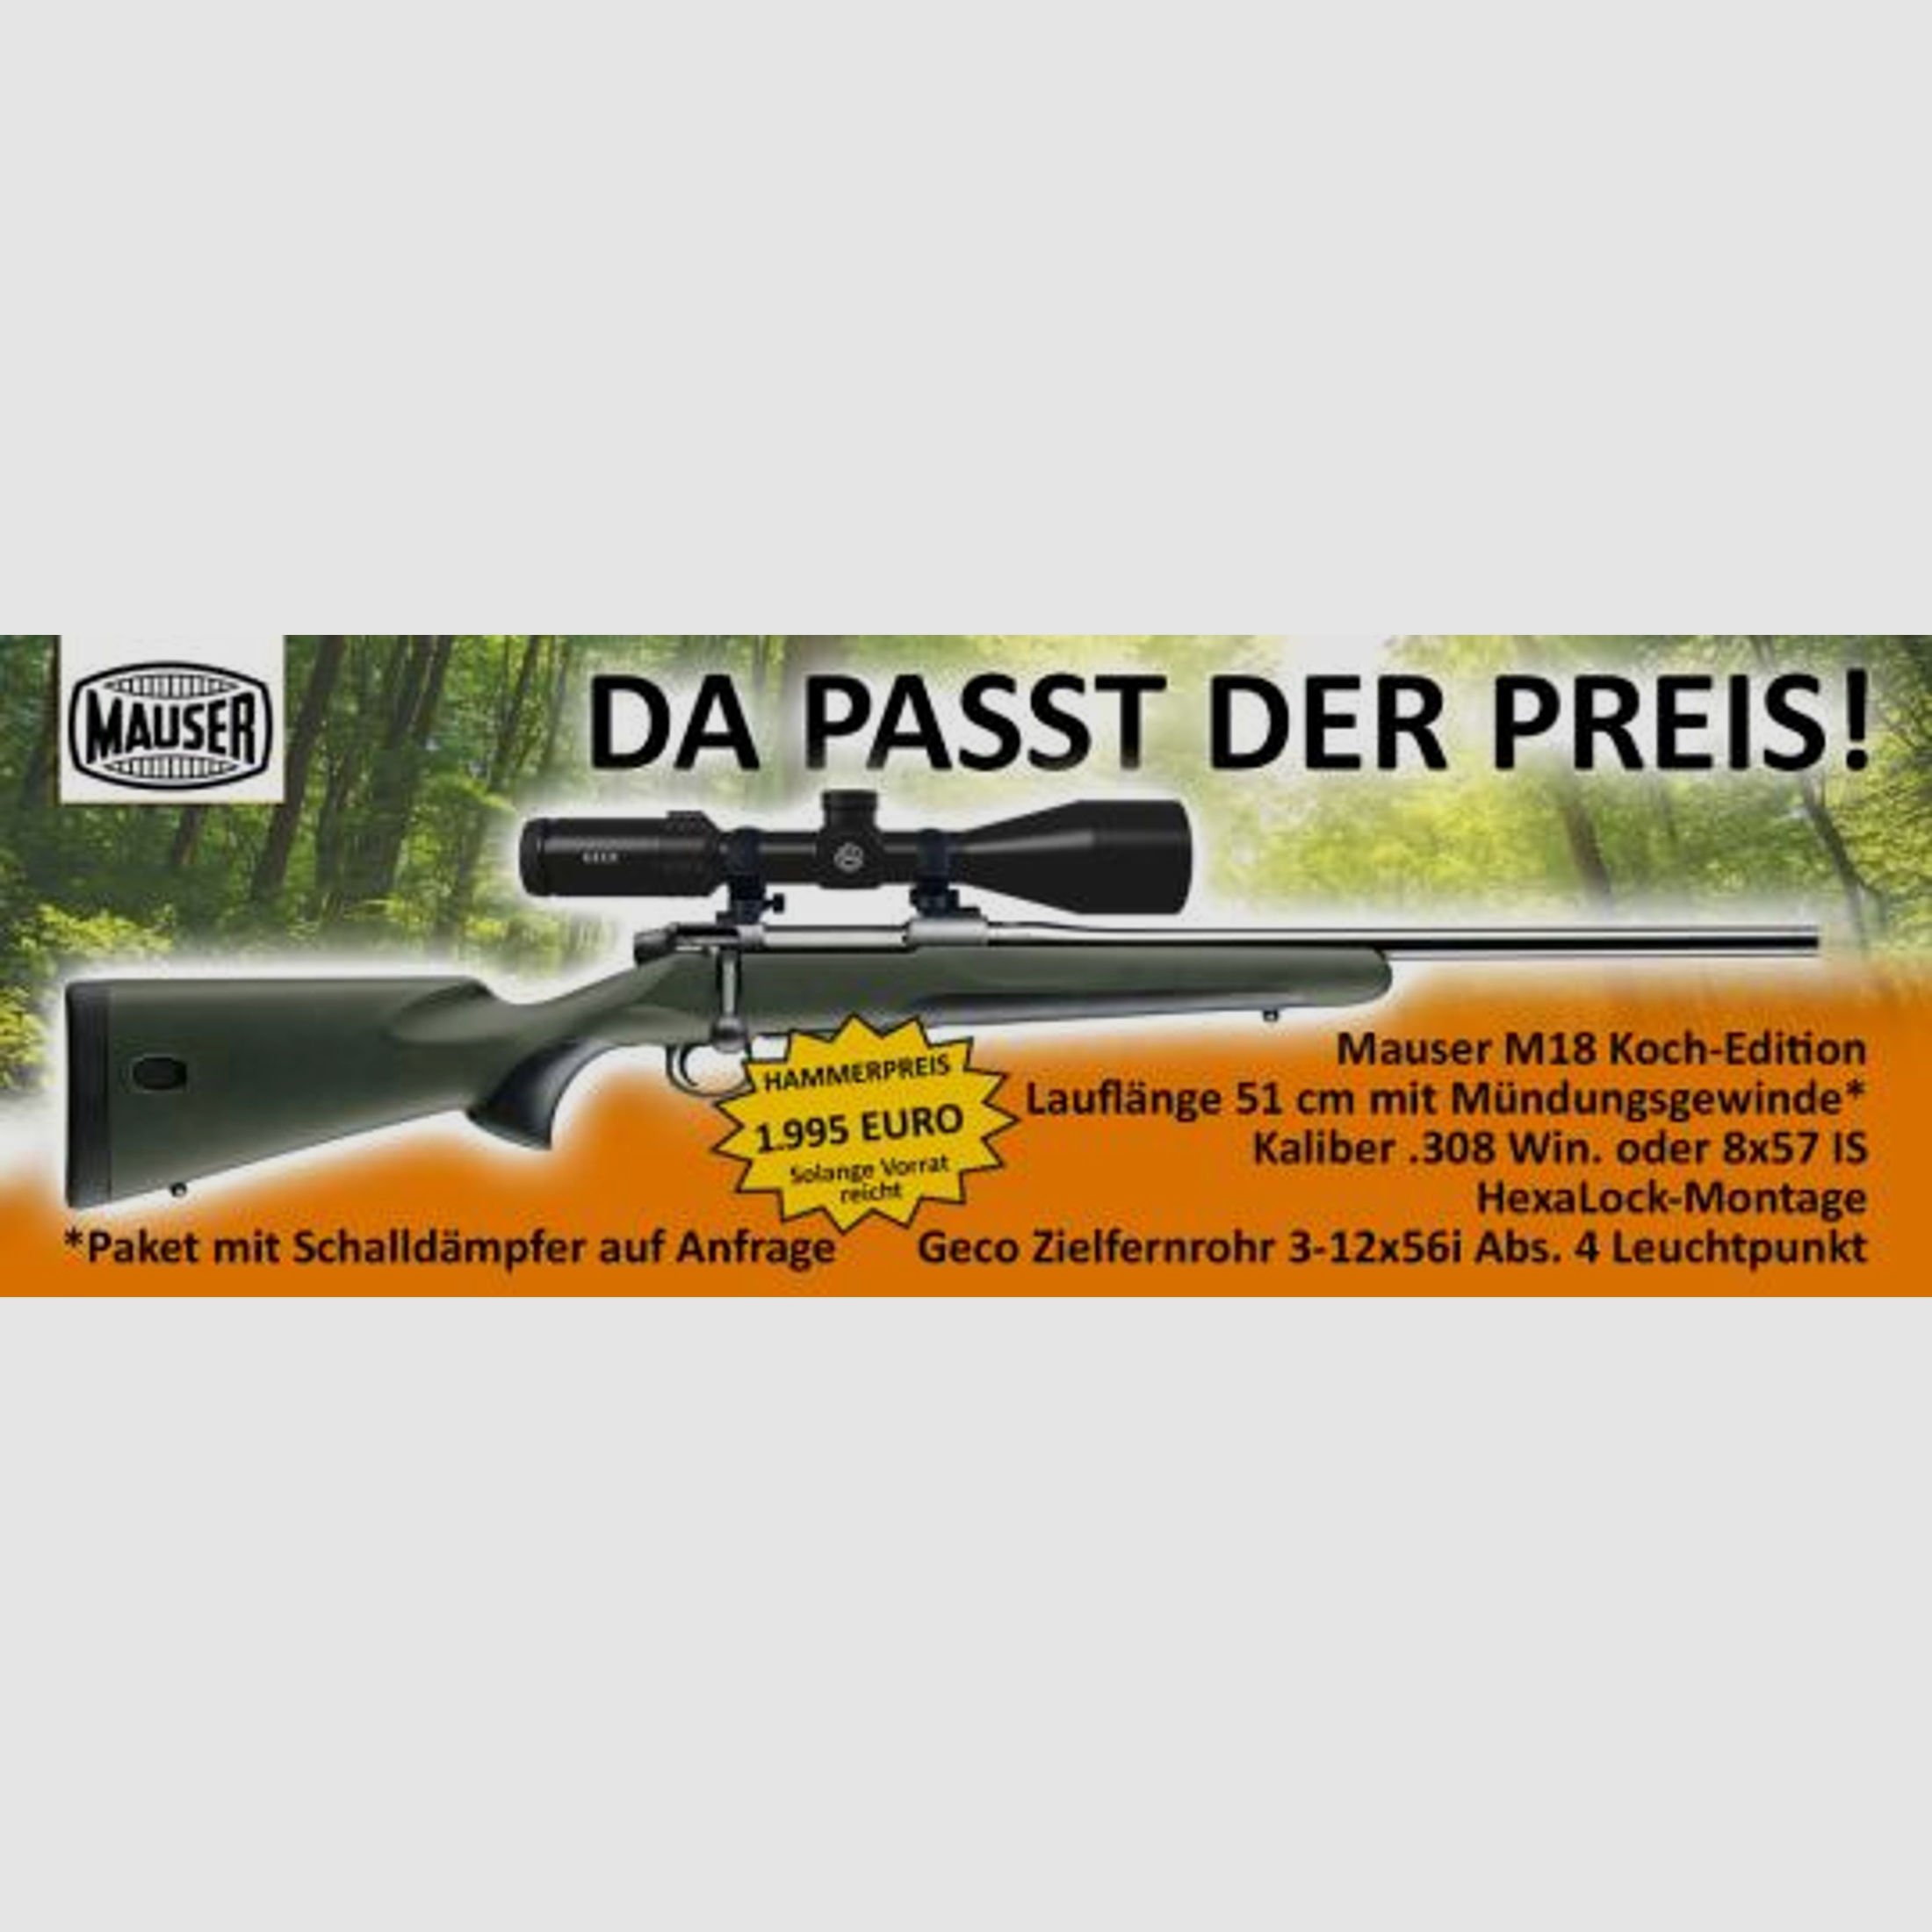 Mauser M18 Koch-Edition in .308 Komplettangebot